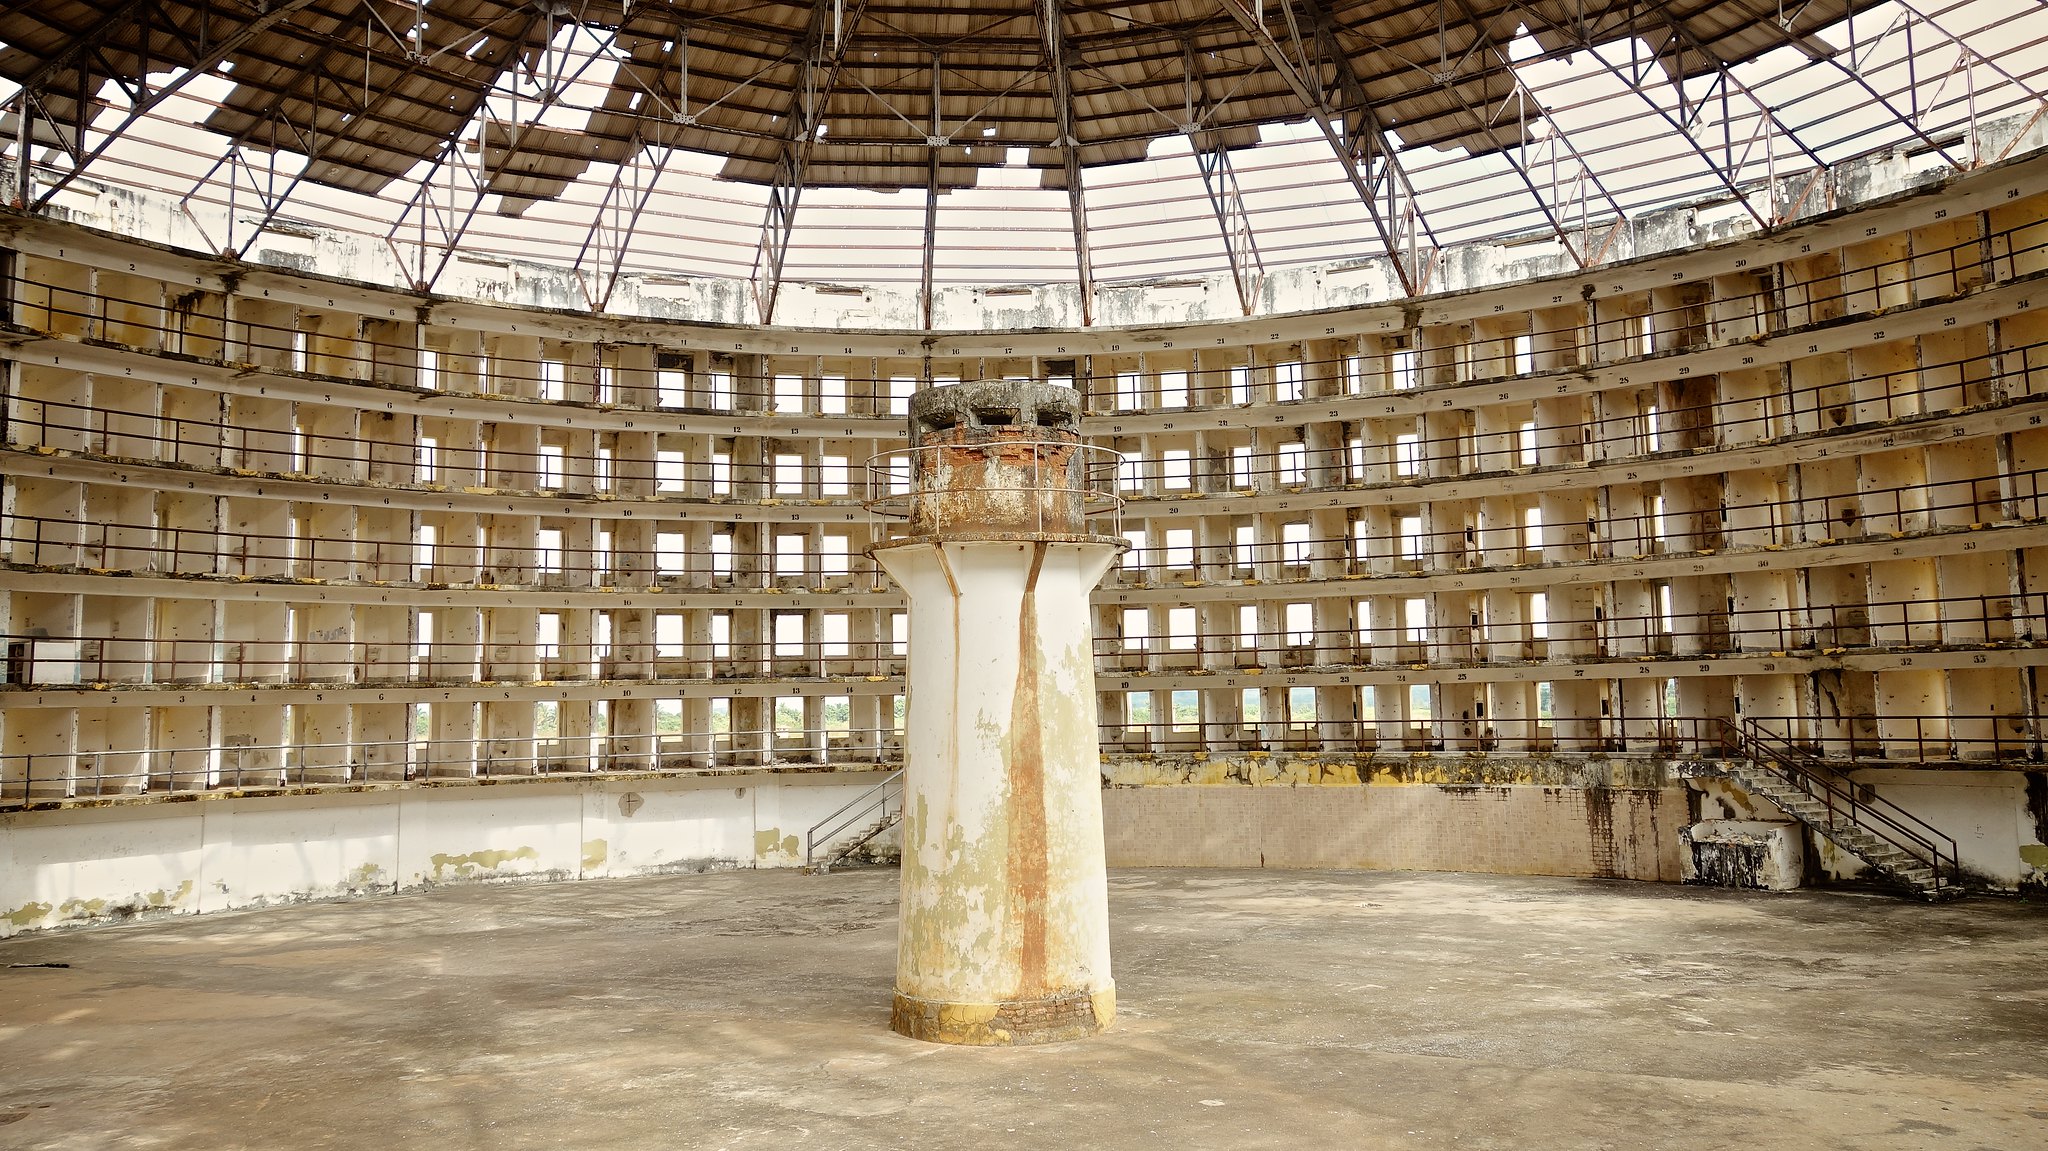 Проект идеальной тюрьмы Бентама был воплощен во множестве тюрем Старого и Нового Света. На фото тюрьма Пресидио-Модело, Куба